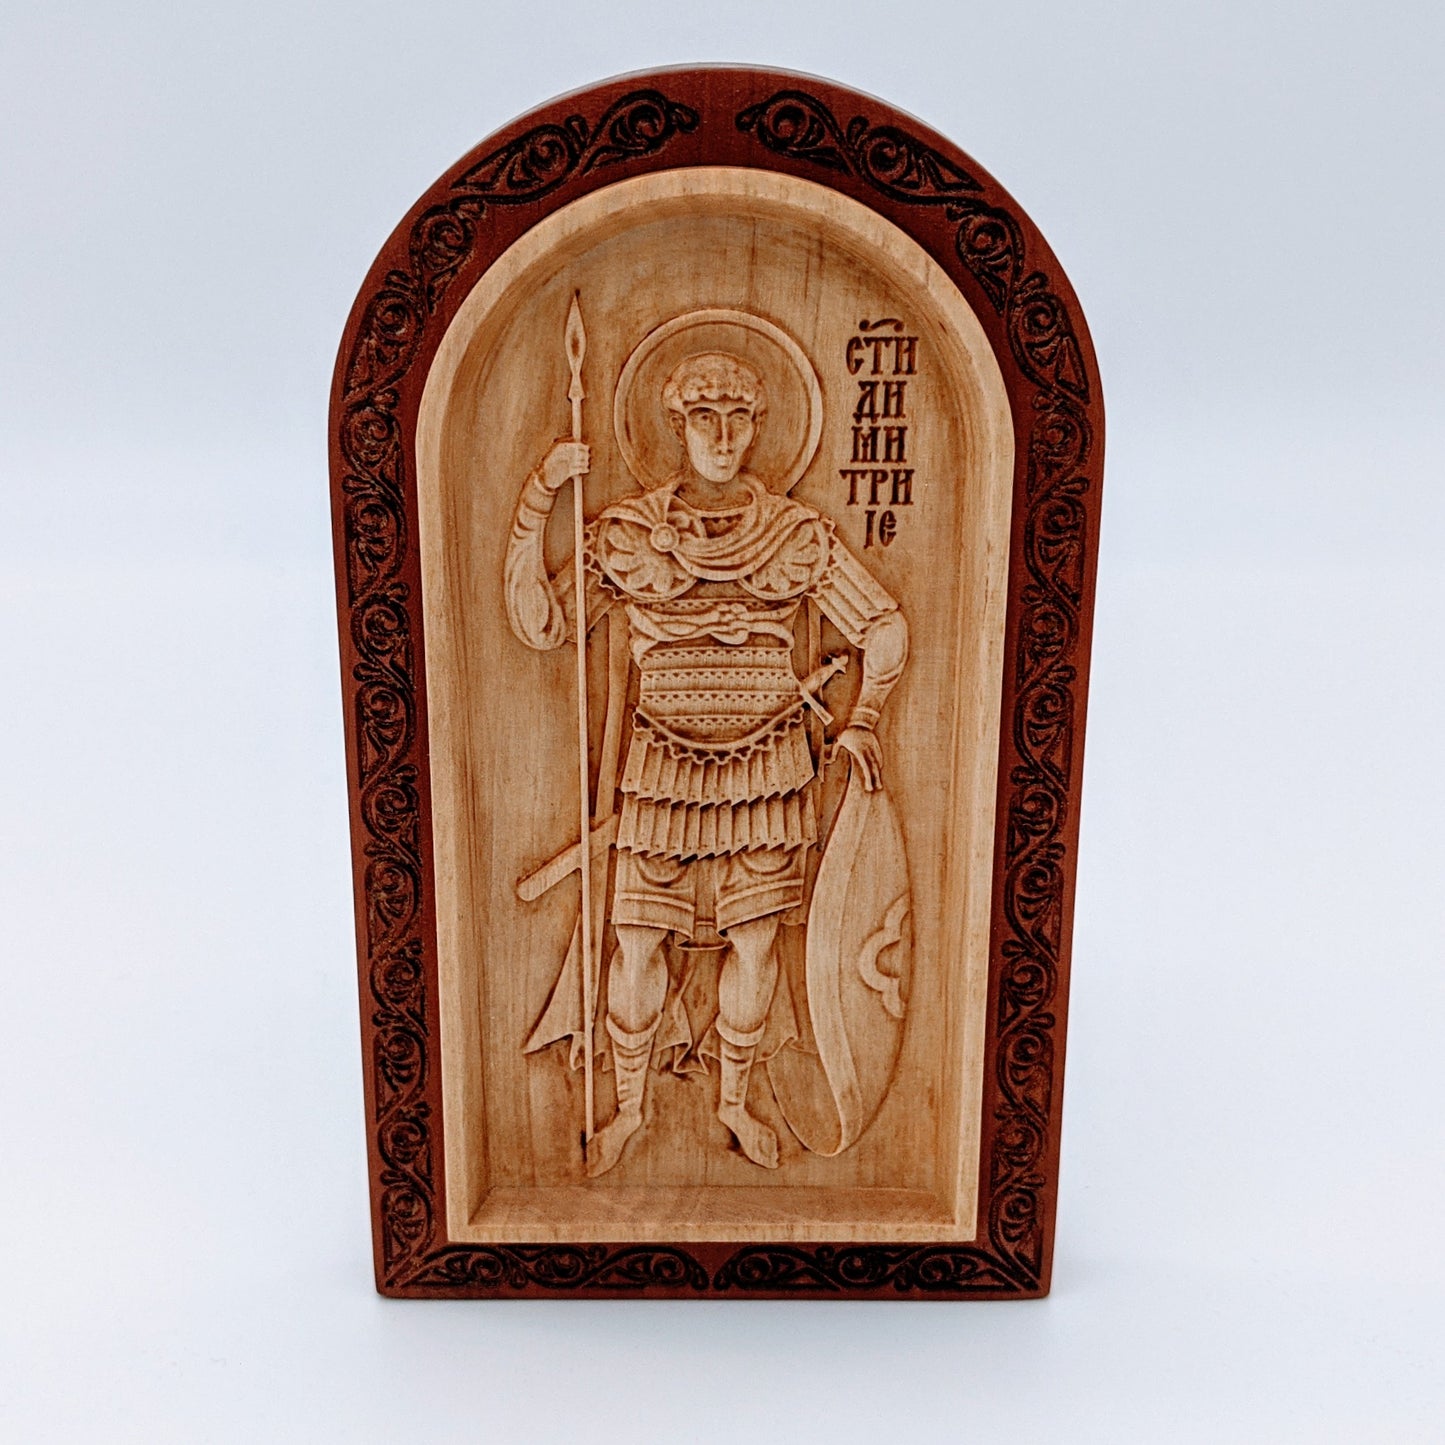 Χειροποίητη εικόνα του Αγίου Δημητρίου από κόκκαλο και ξύλο